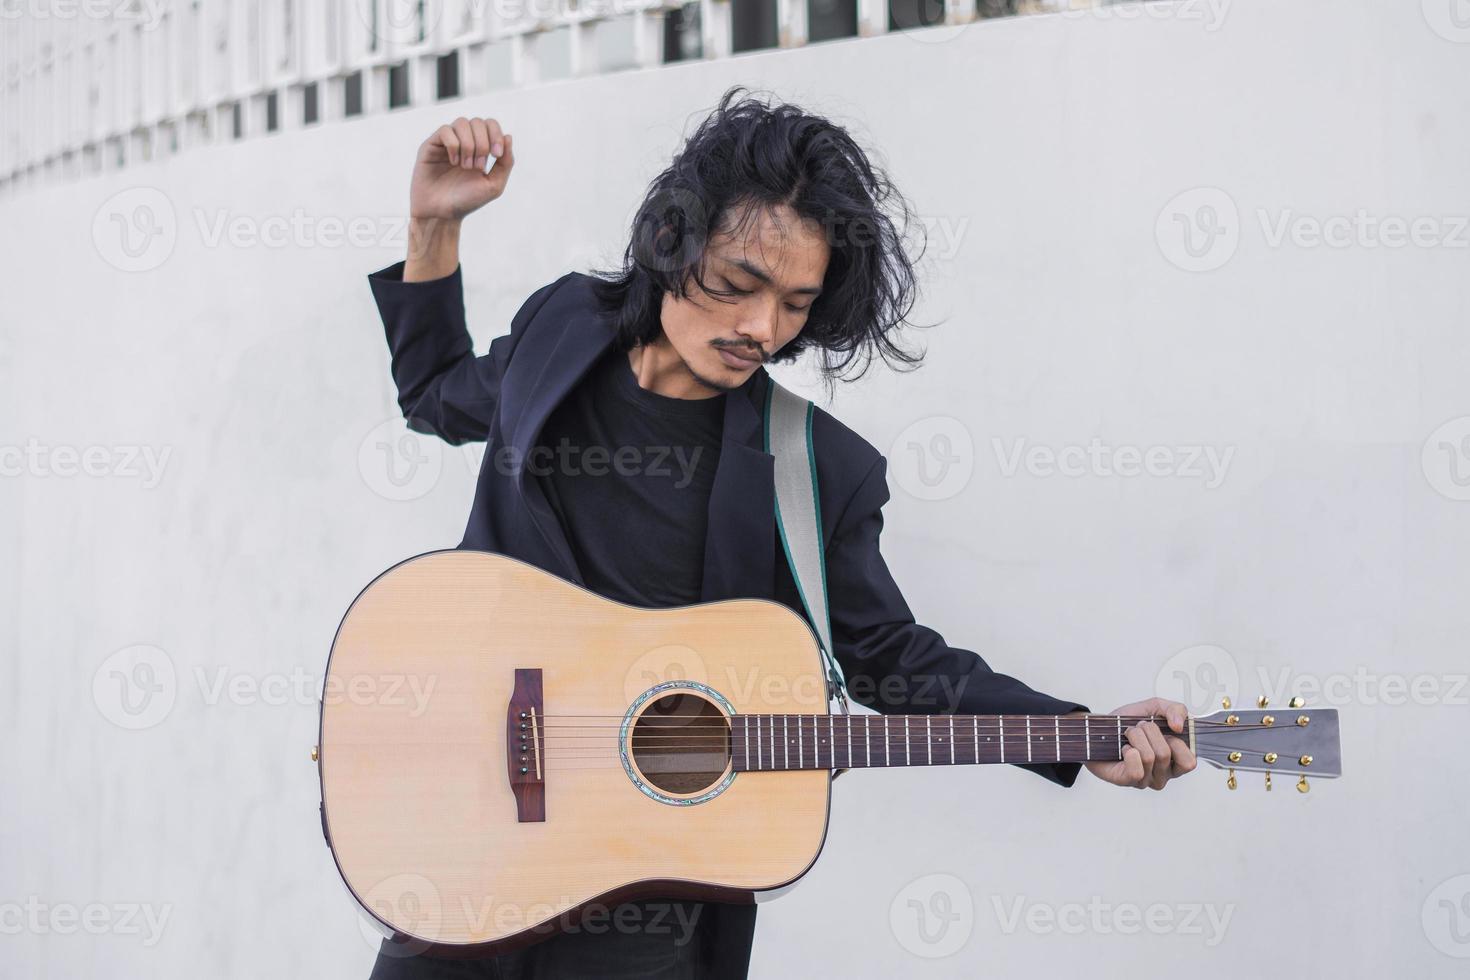 porträtt man håller gitarr spelar musikfestival utomhus, livsstil mode musikgata utomhus foto